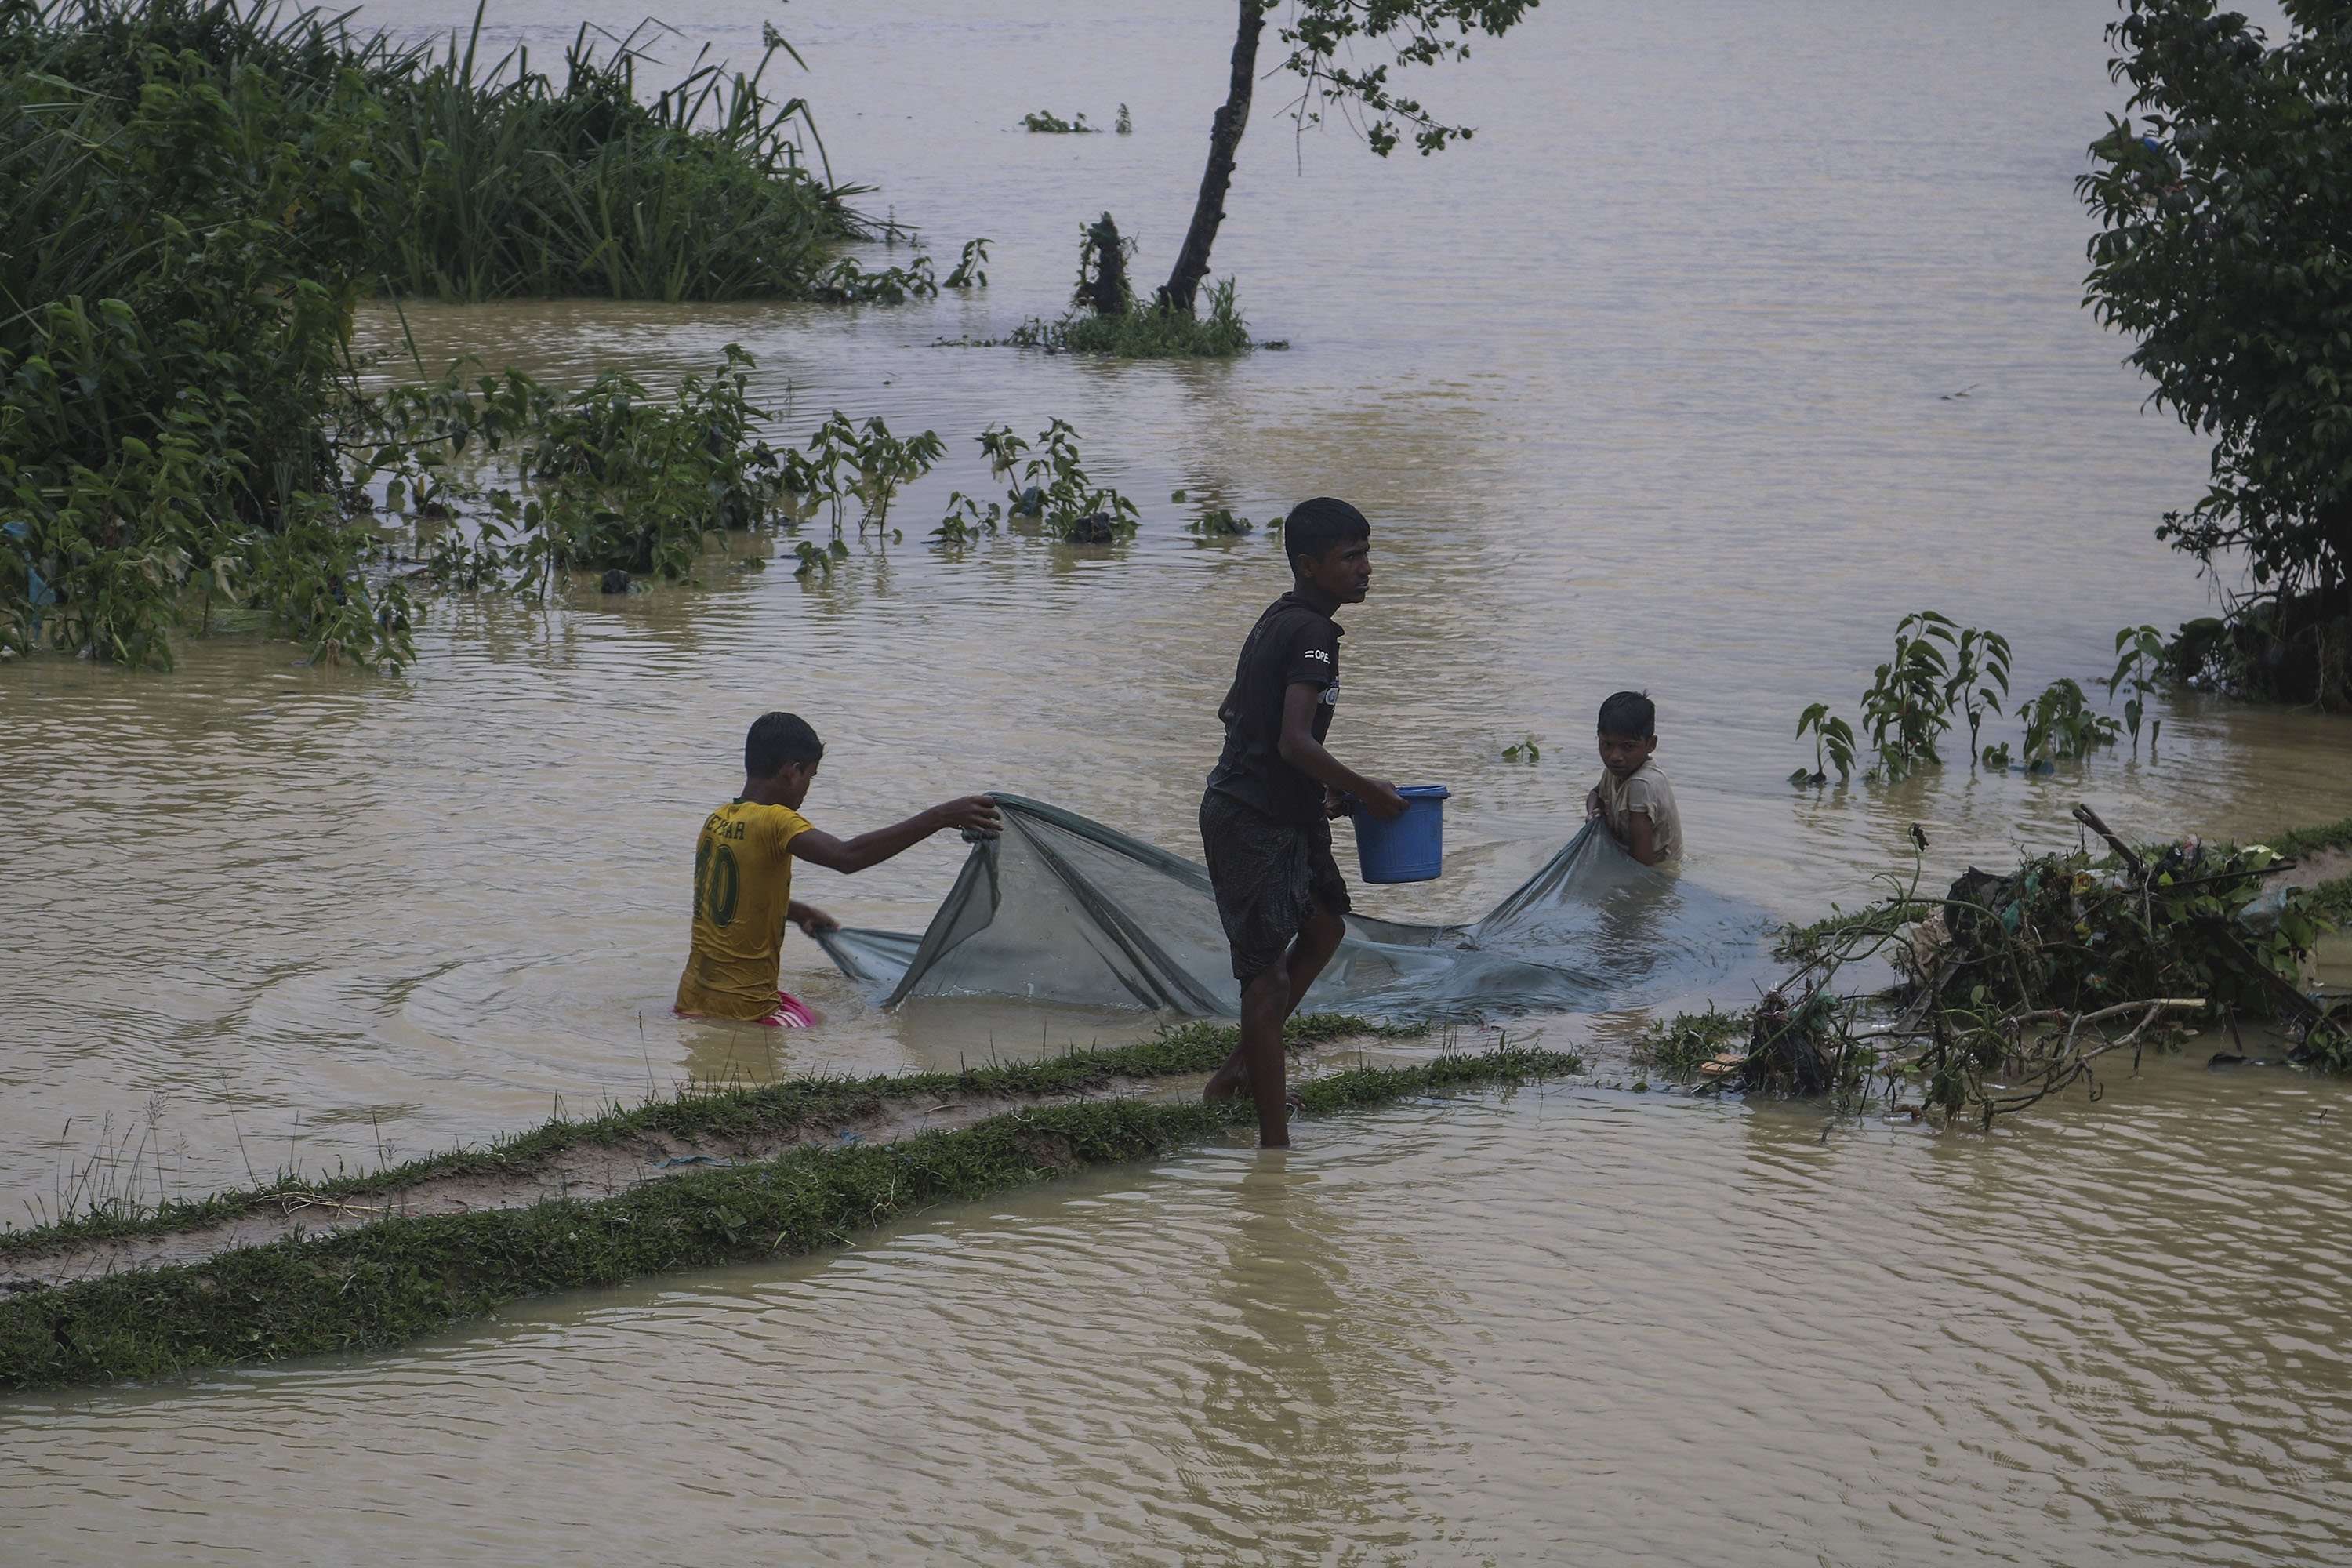 essay flood in bangladesh